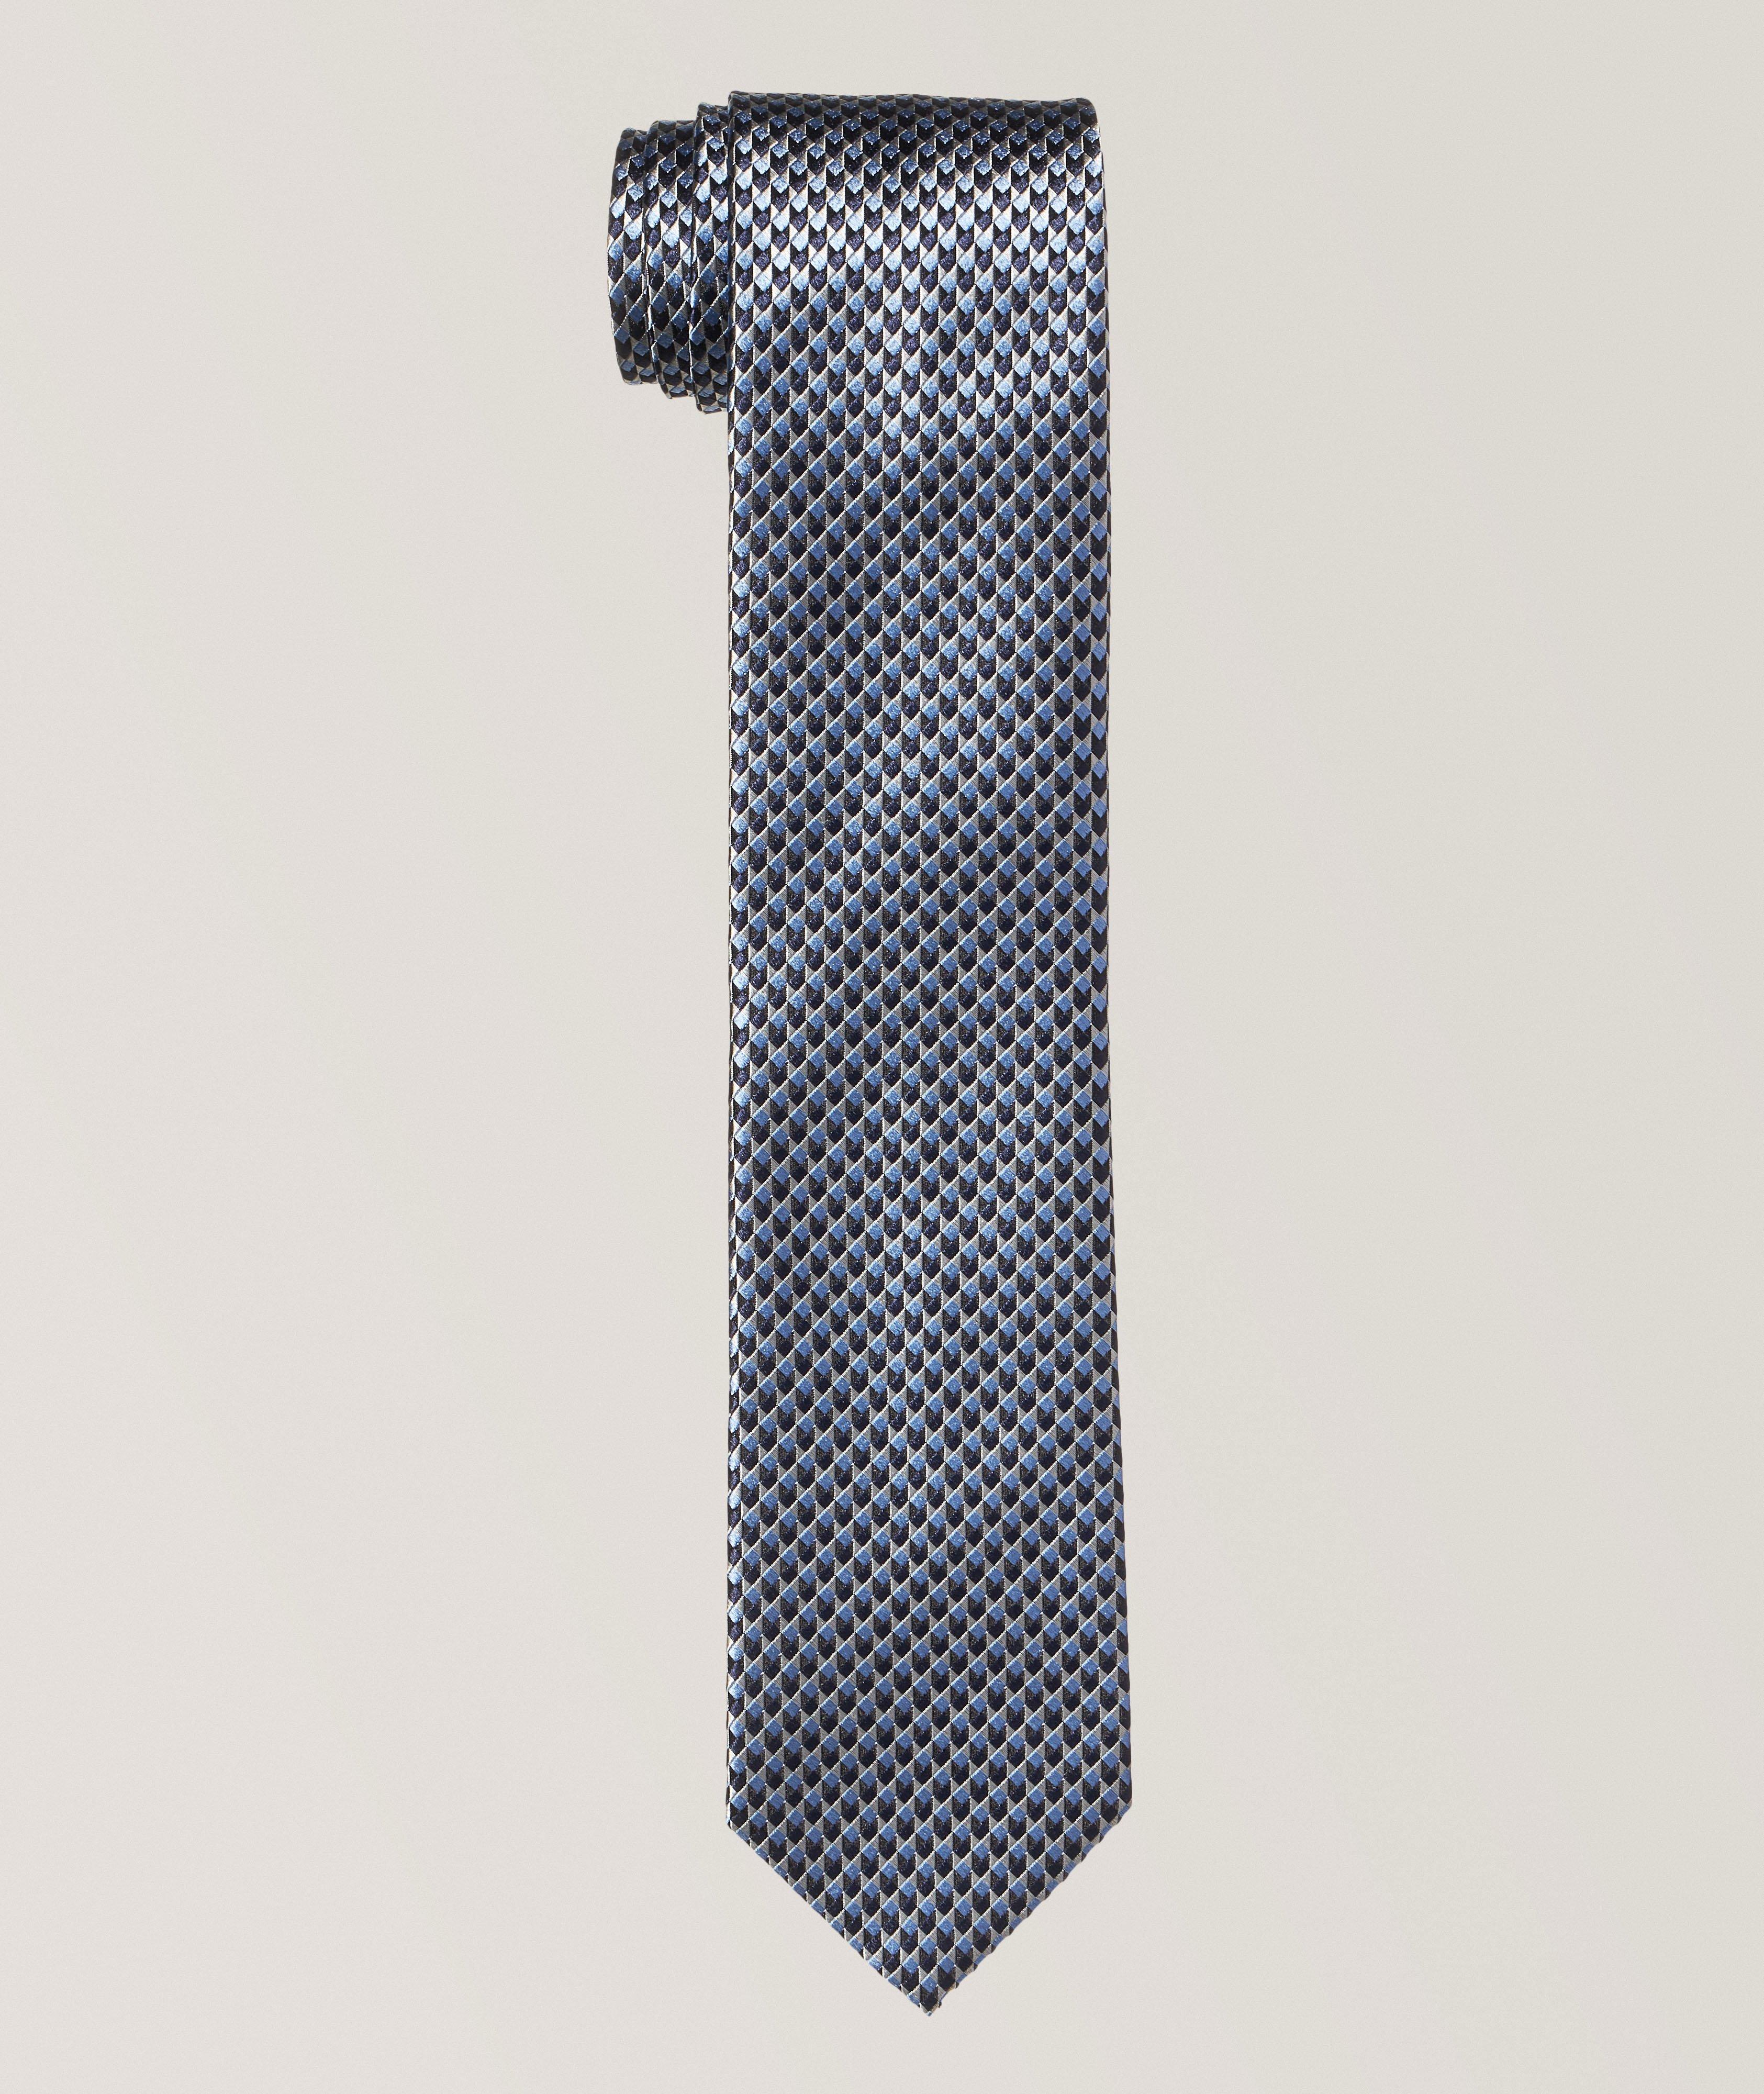 Cravate à motif géométrique image 0